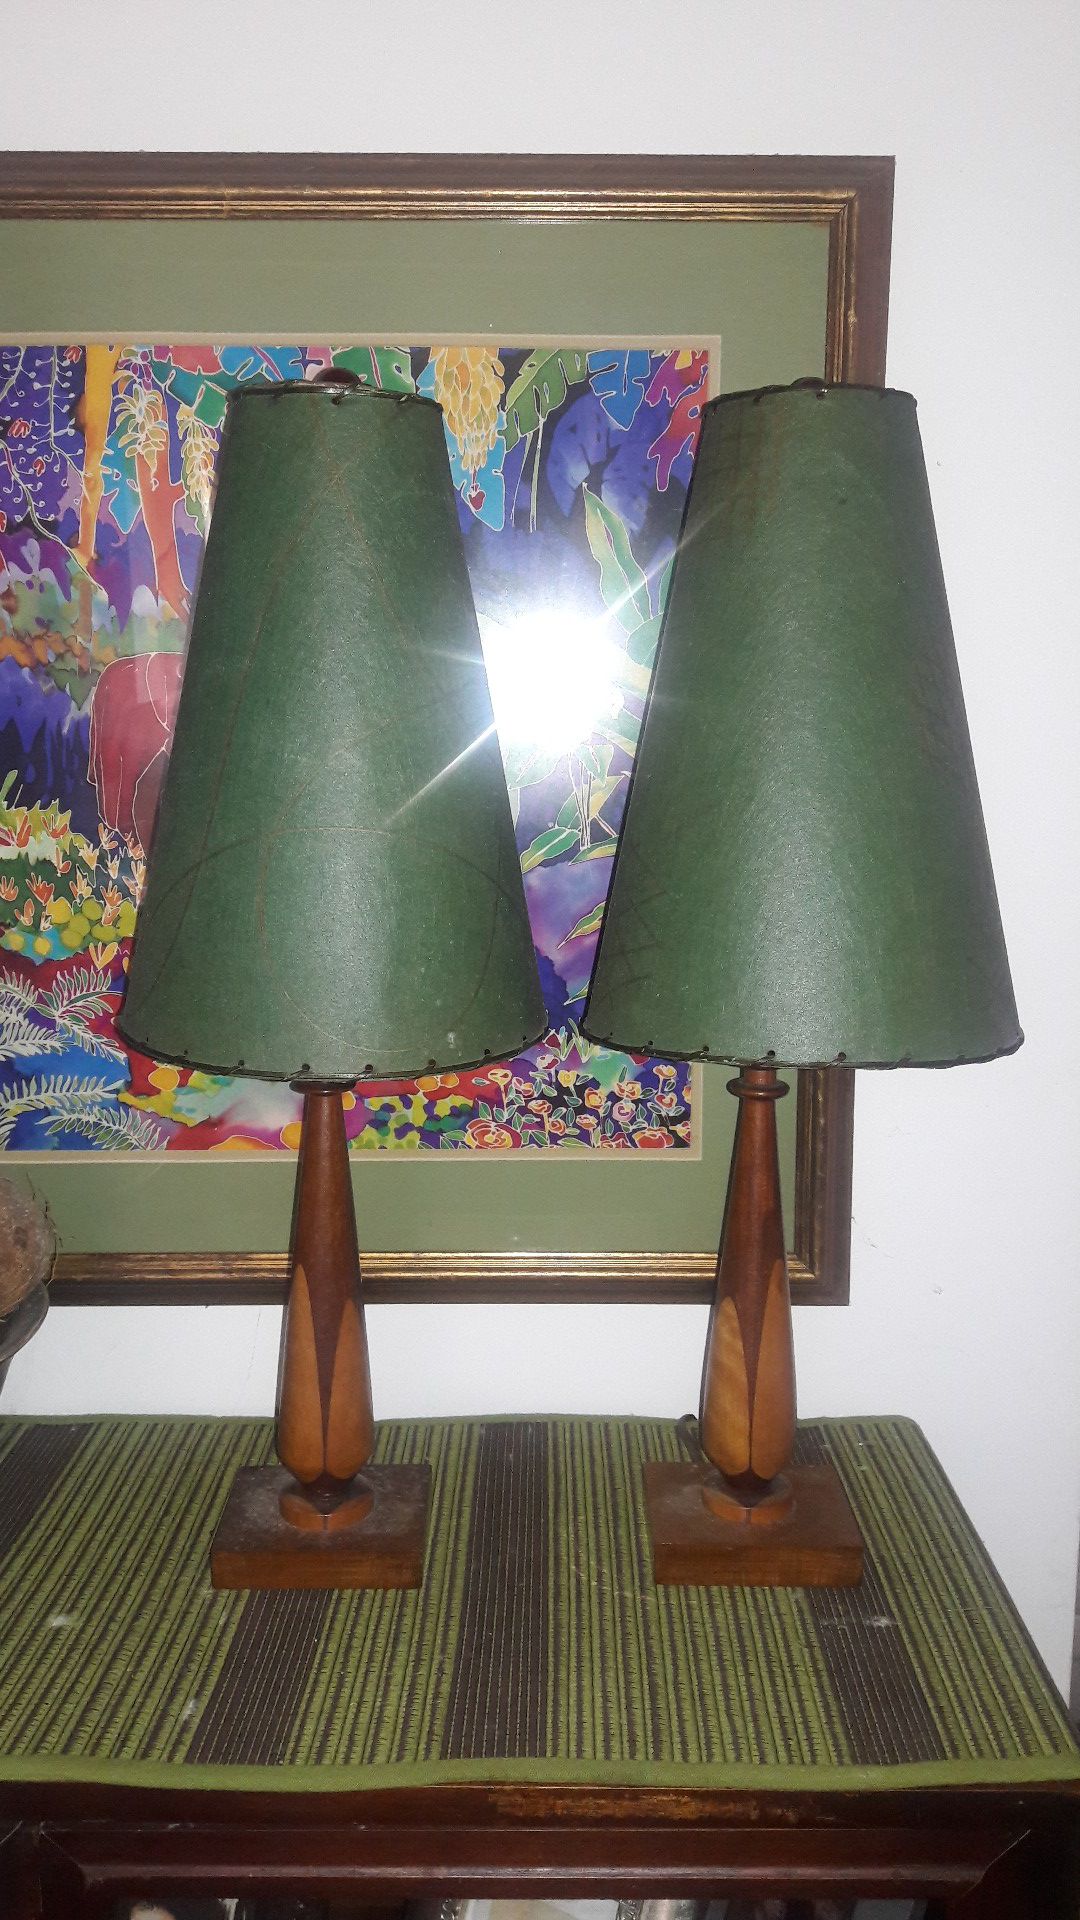 2 Antique Table Lamps